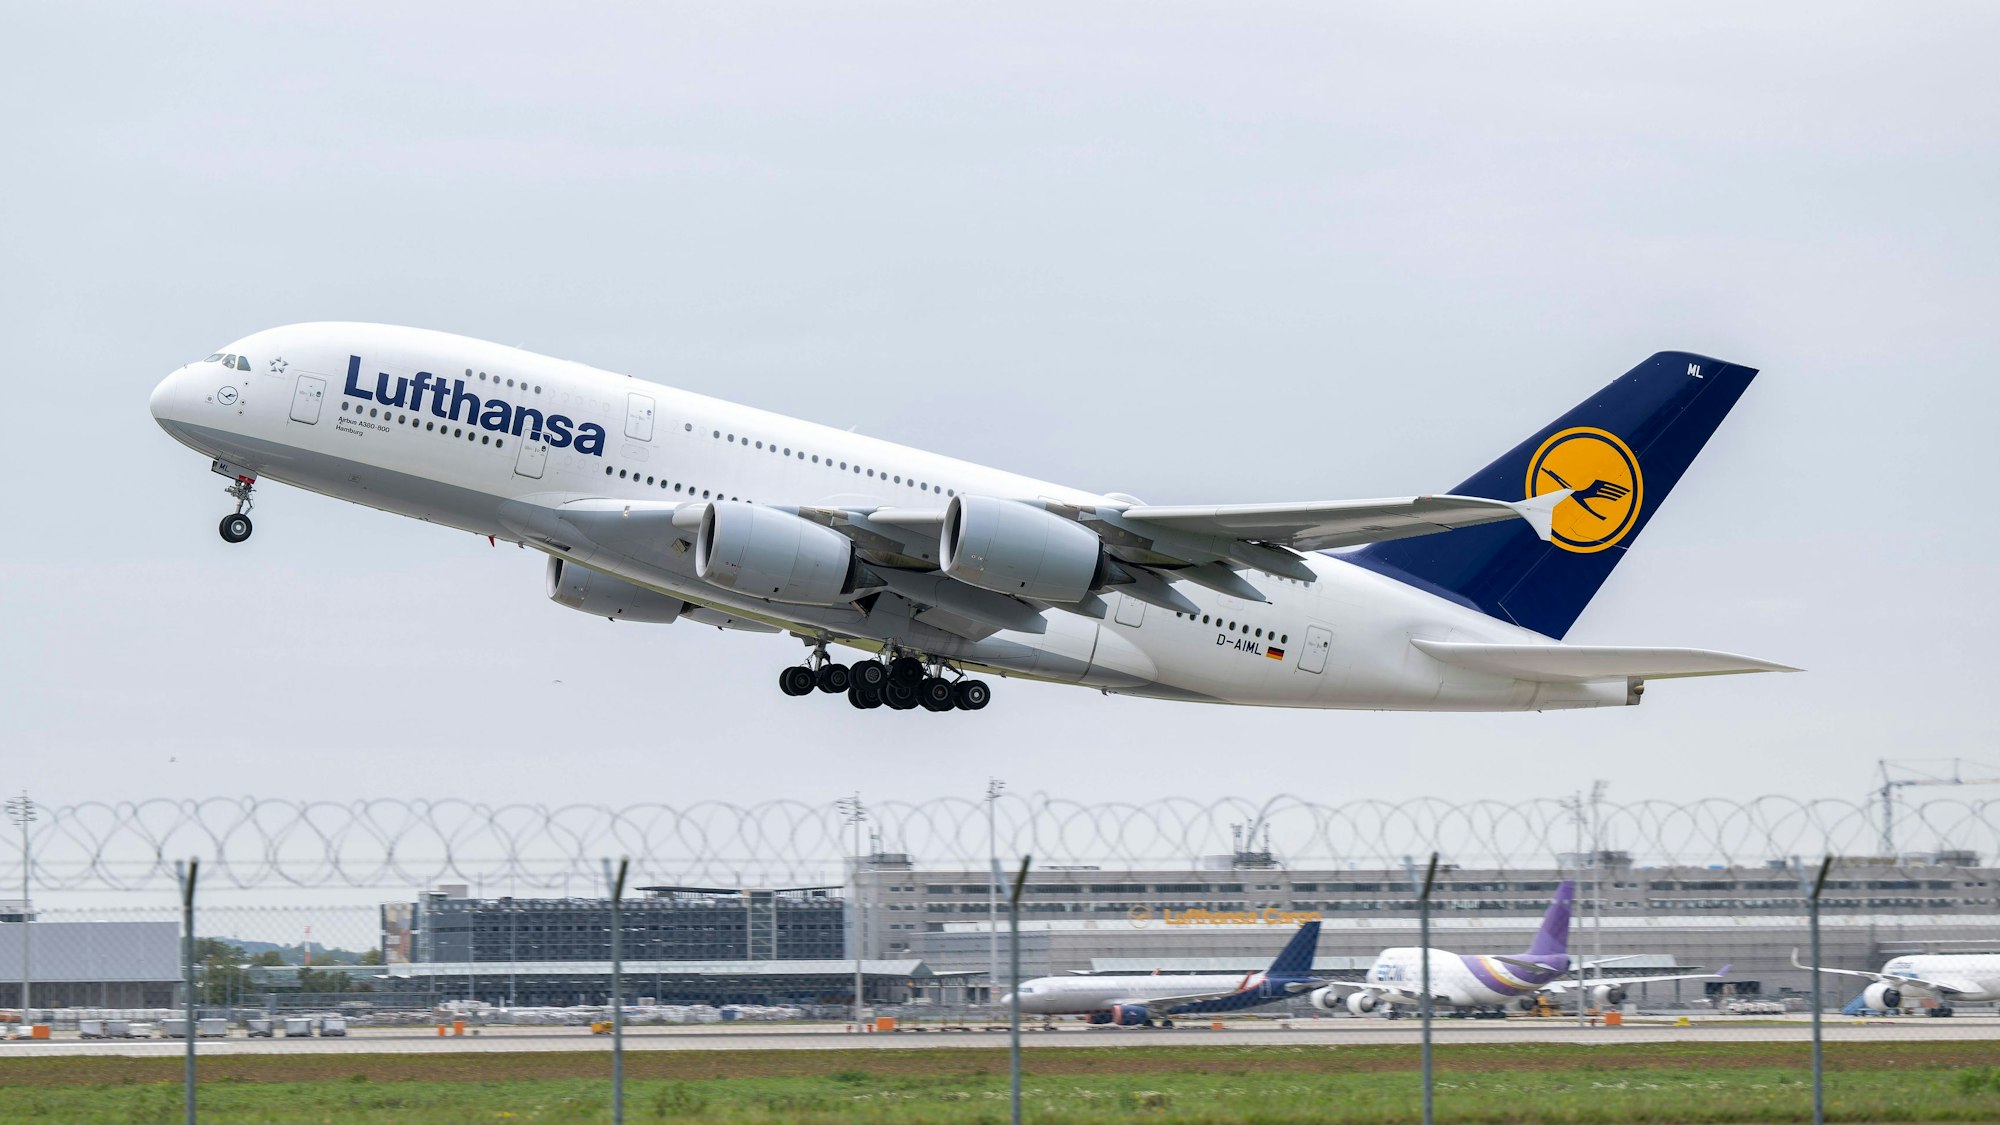 Ein Airbus A380 der Lufthansa kurz nach dem Start am Flughafen München. Ein Pilot der deutschen Fluggesellschaft hat mit einem kontroversen Flugmanöver eine Debatte ausgelöst. (Symbolbild)